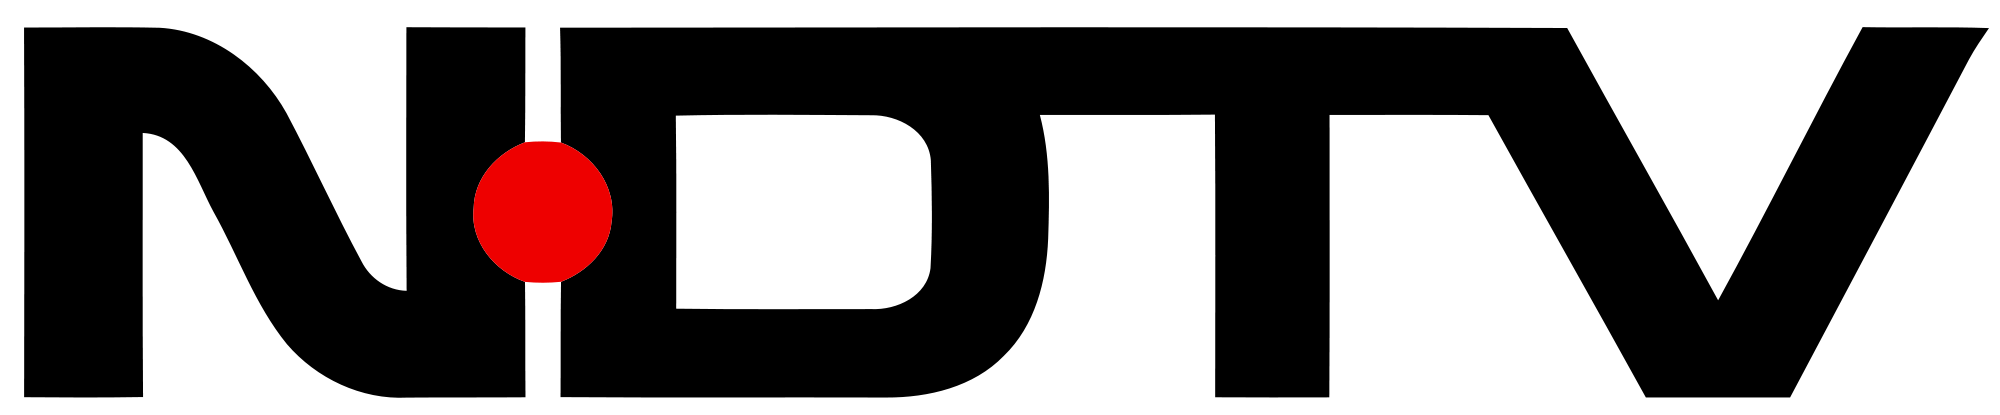 Ndtv logo